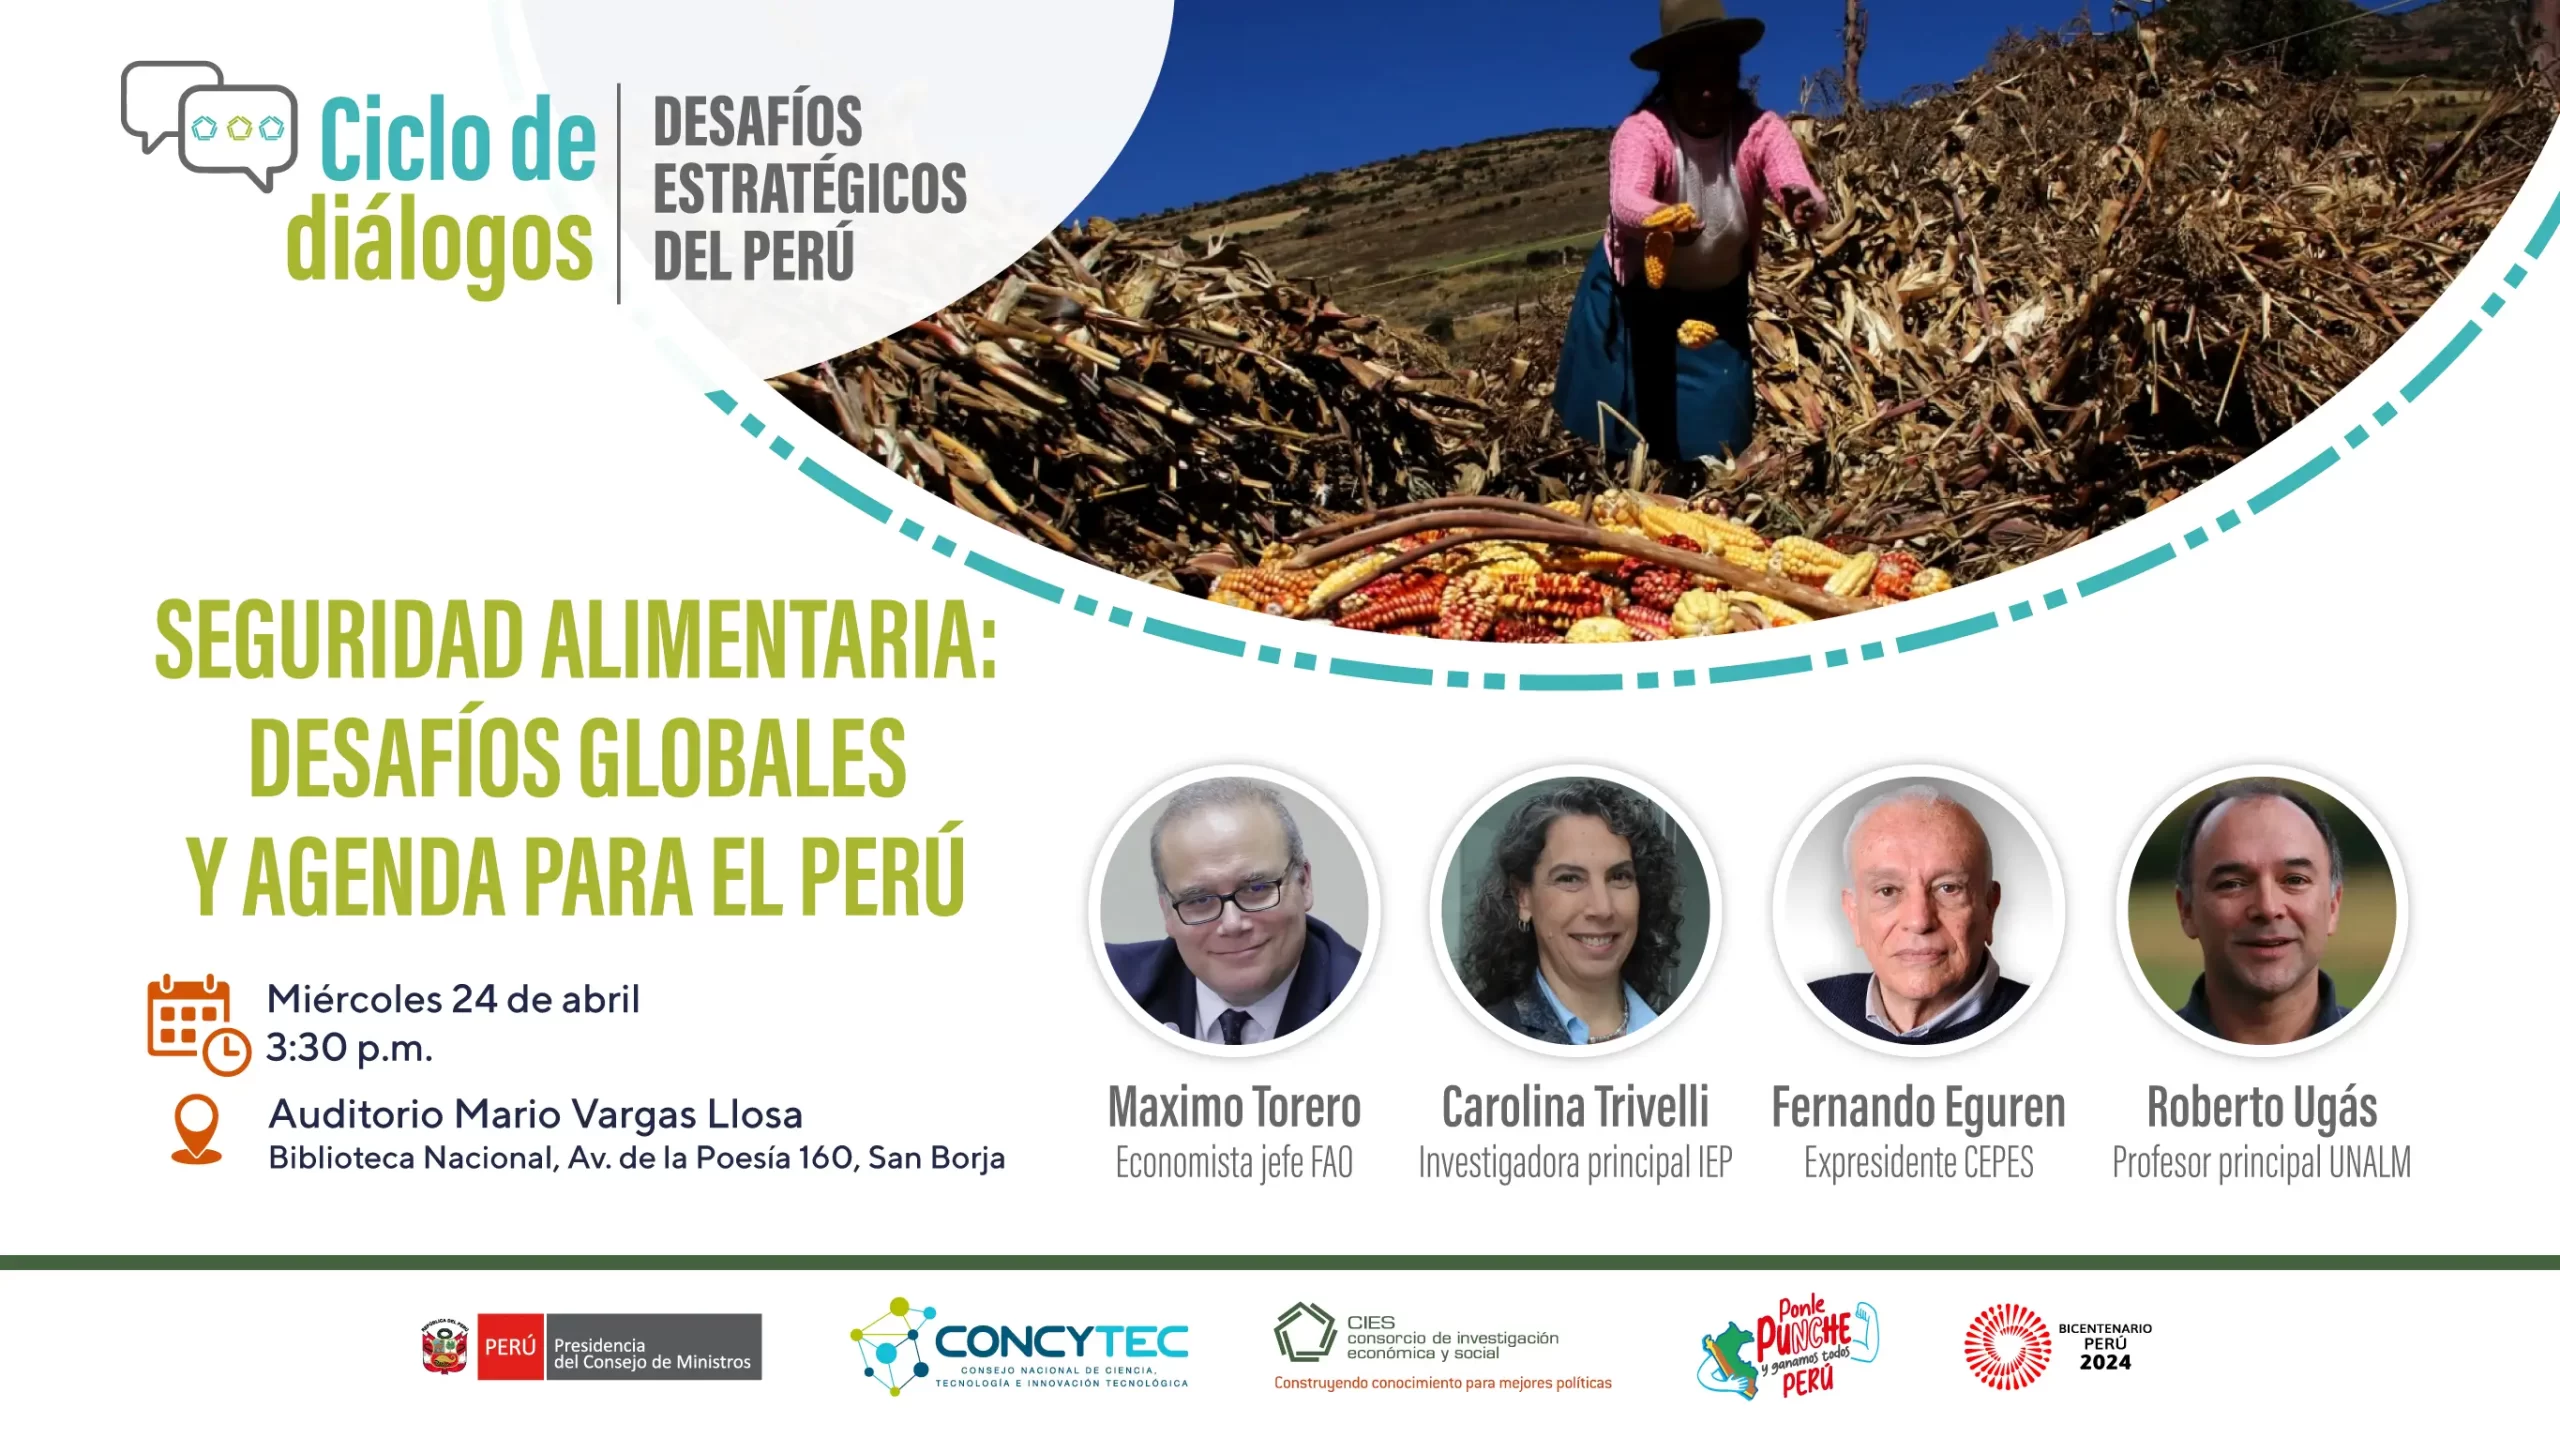 Seguridad alimentaria: desafíos globales y agenda para el Perú